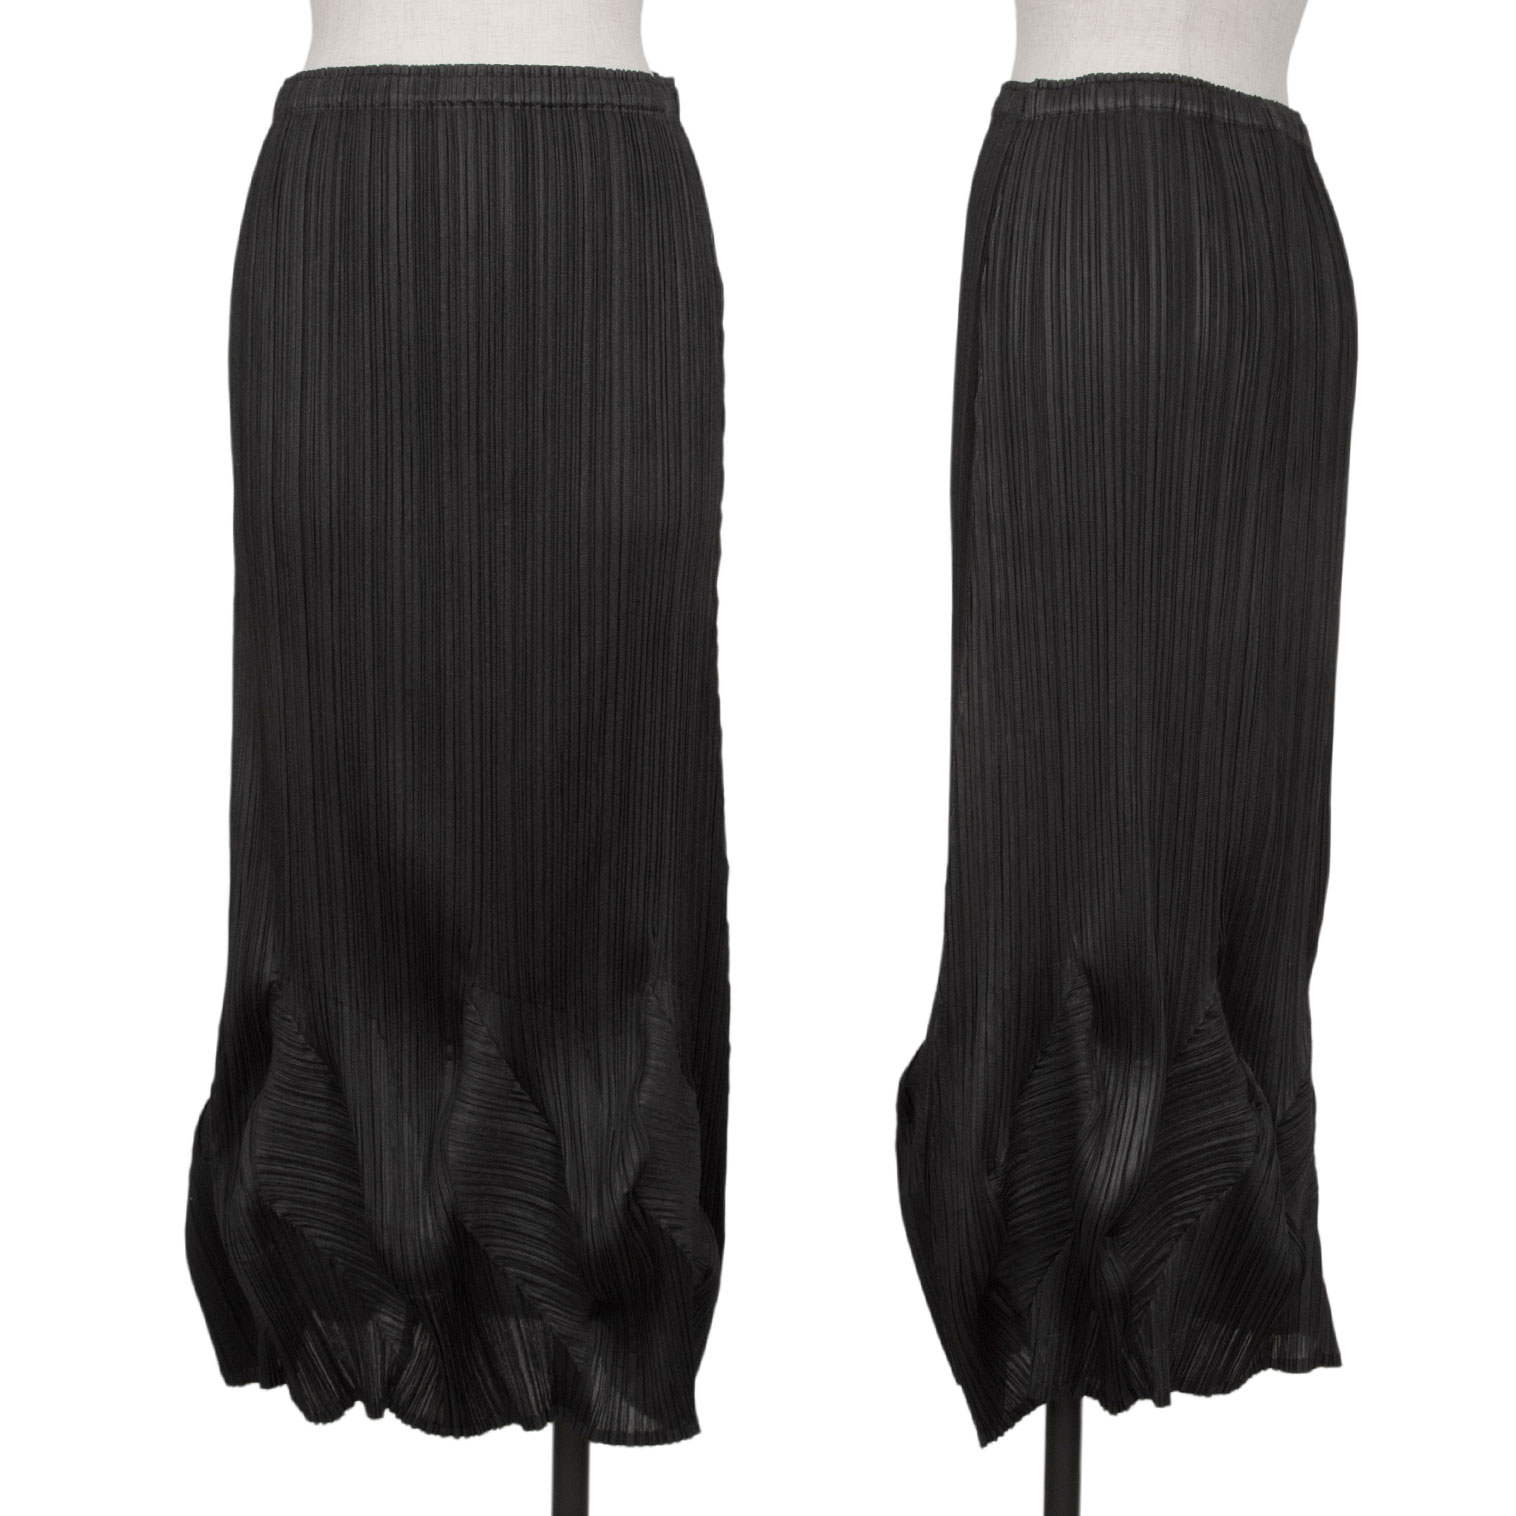 9,600円プリーツプリーズ フレアスカート 黒 サイズ4